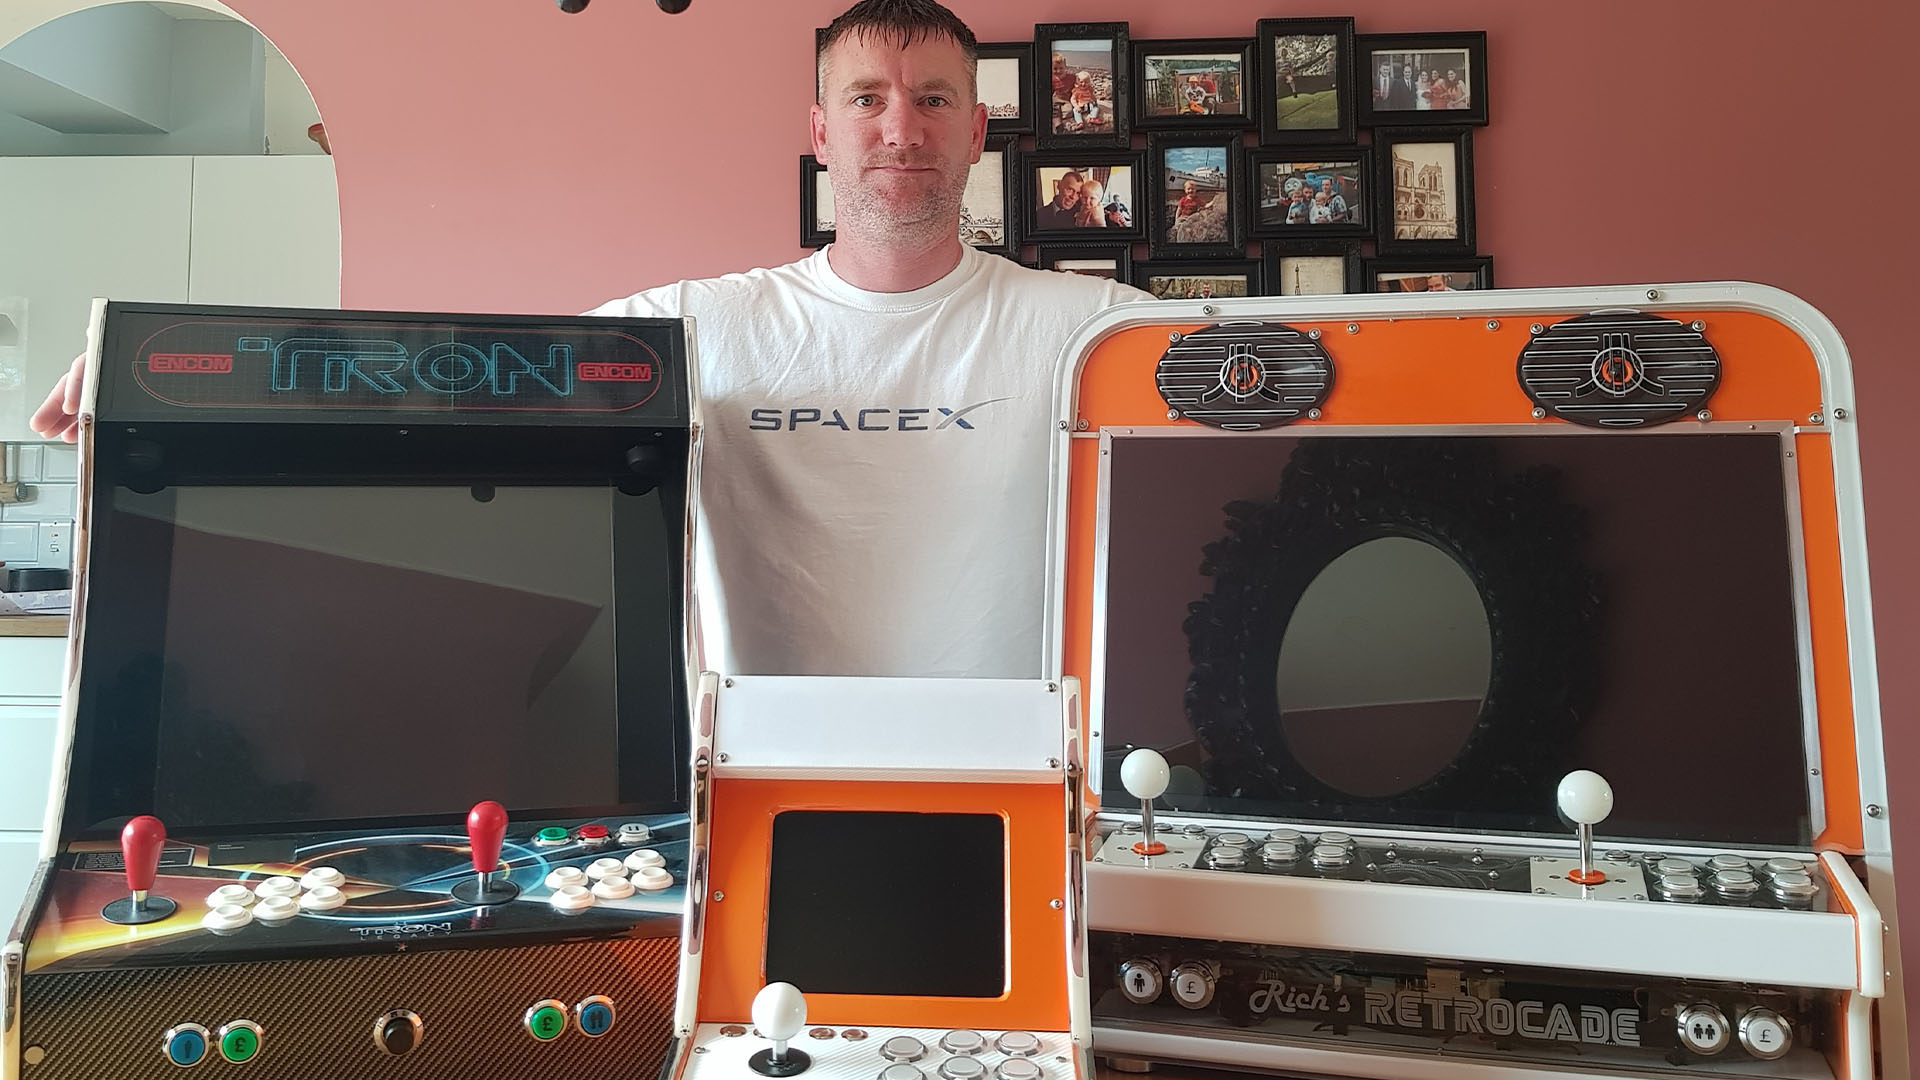 Retro arcade gaming custom PC build: Rich Jones with his Retrocade and Tron arcade cabinet designs